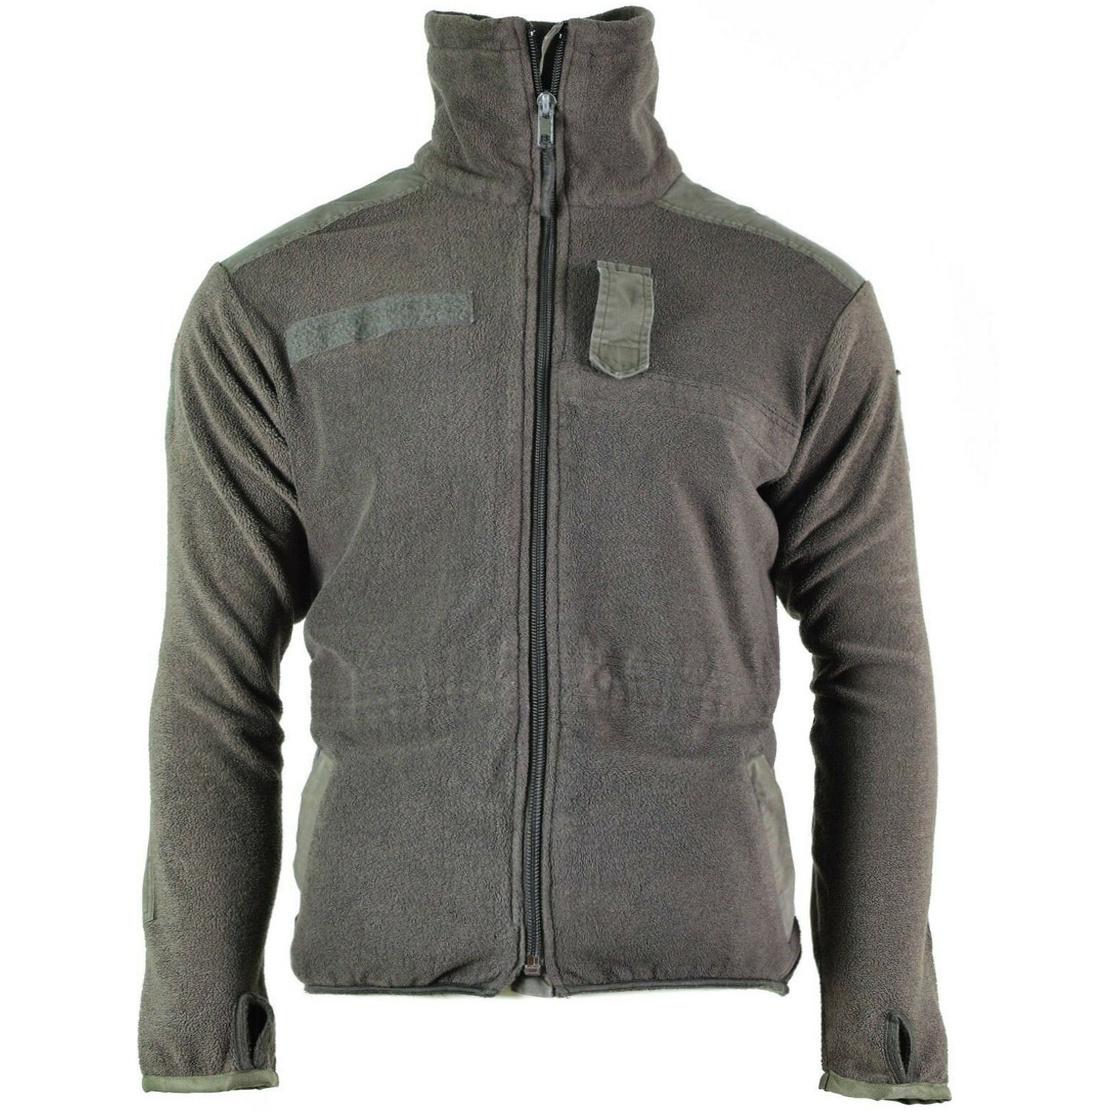 Men's Outdoor Tactical Army Warm Fleece Jacket